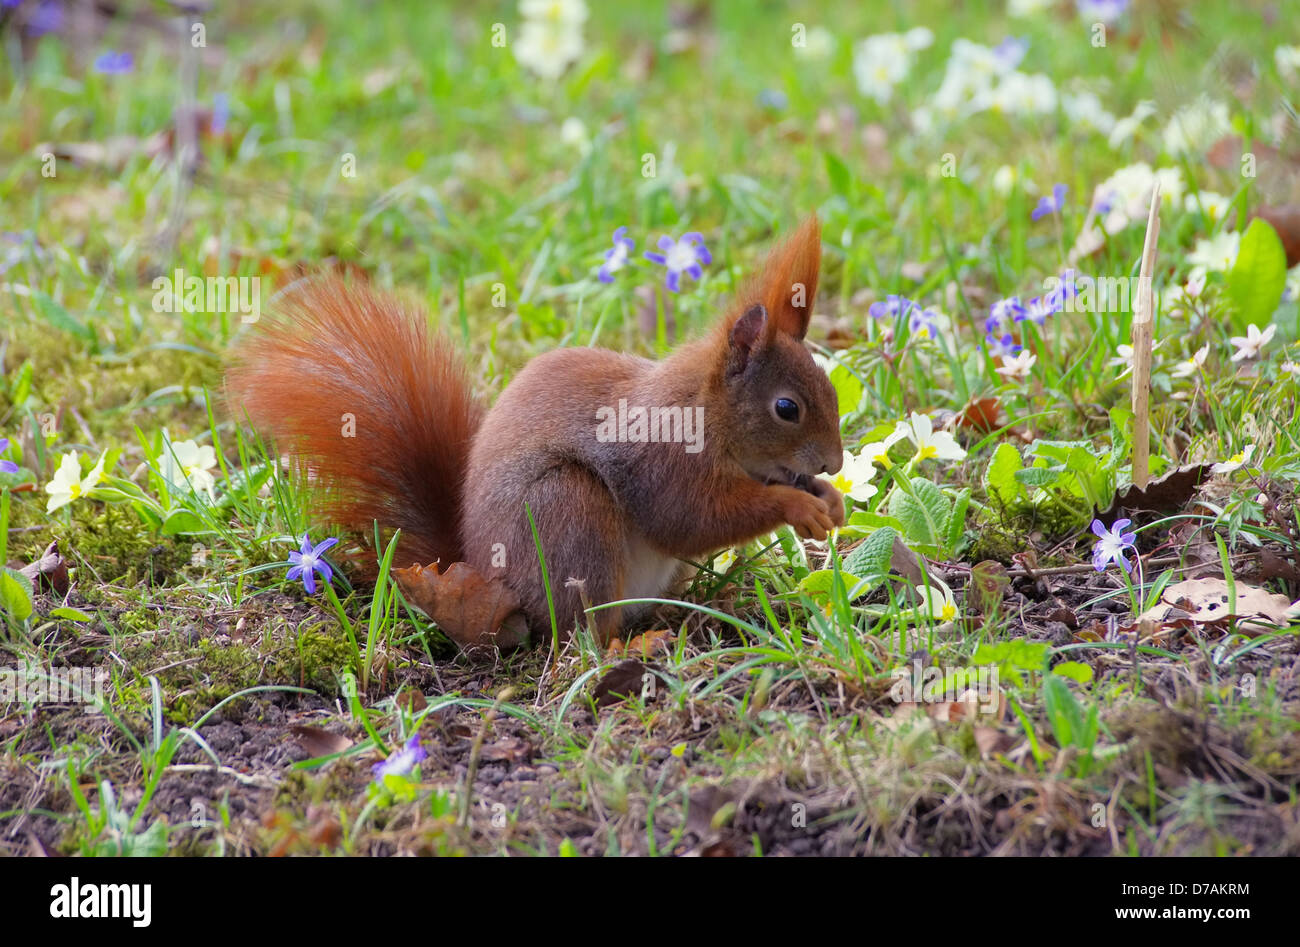 Eichhoernchen - Red squirrel 01 Stock Photo